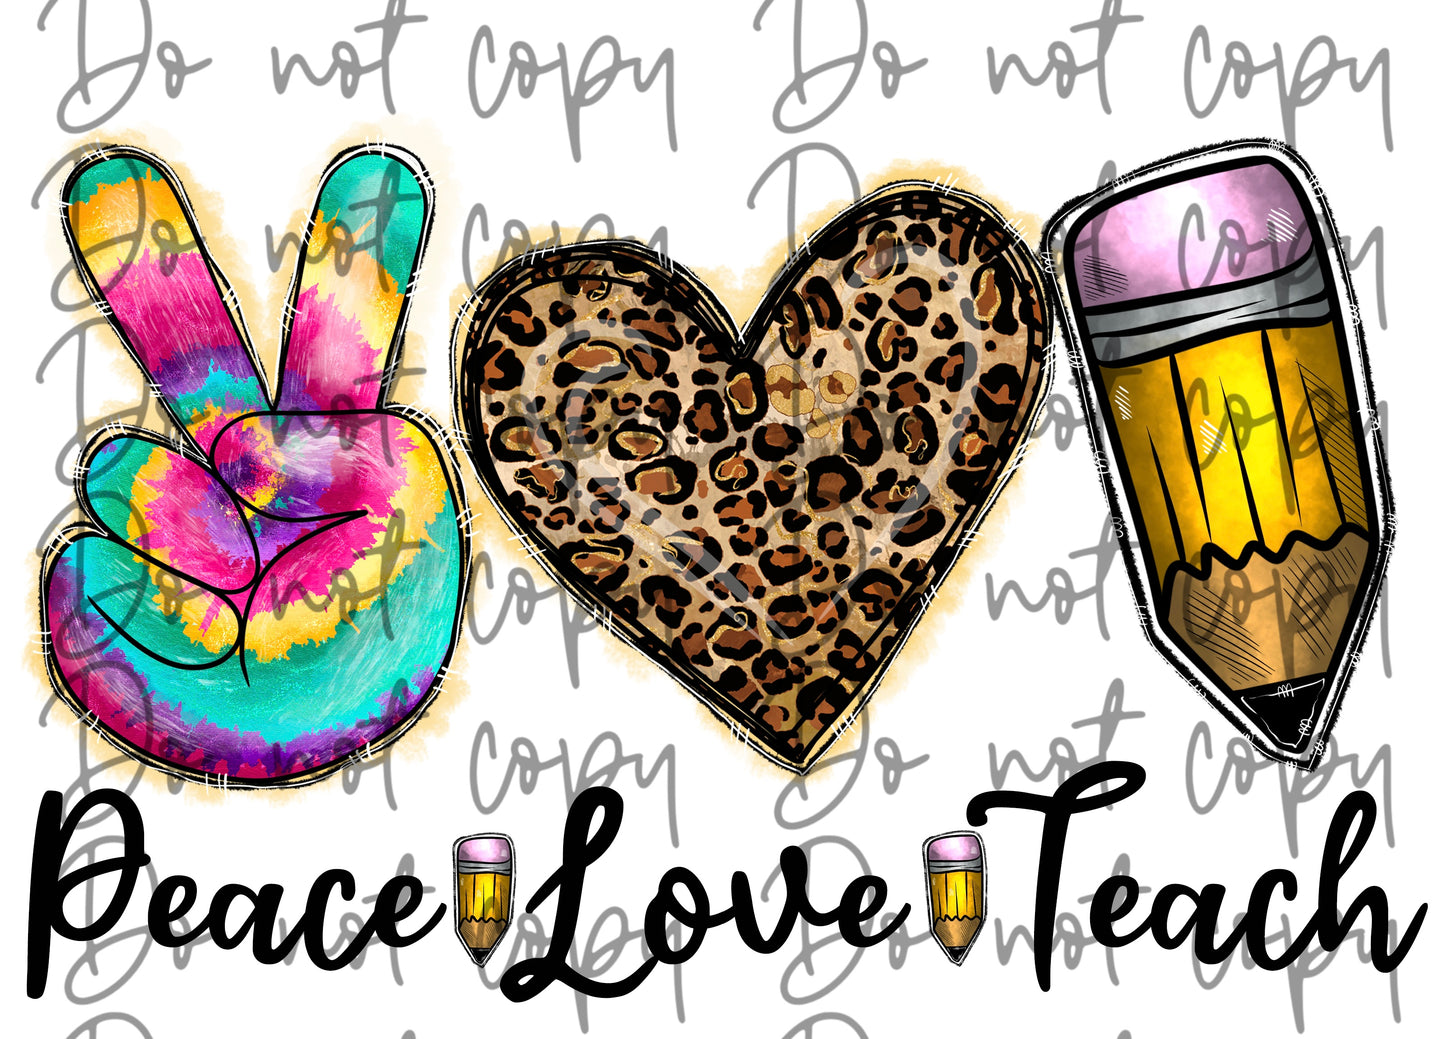 Peace love teach